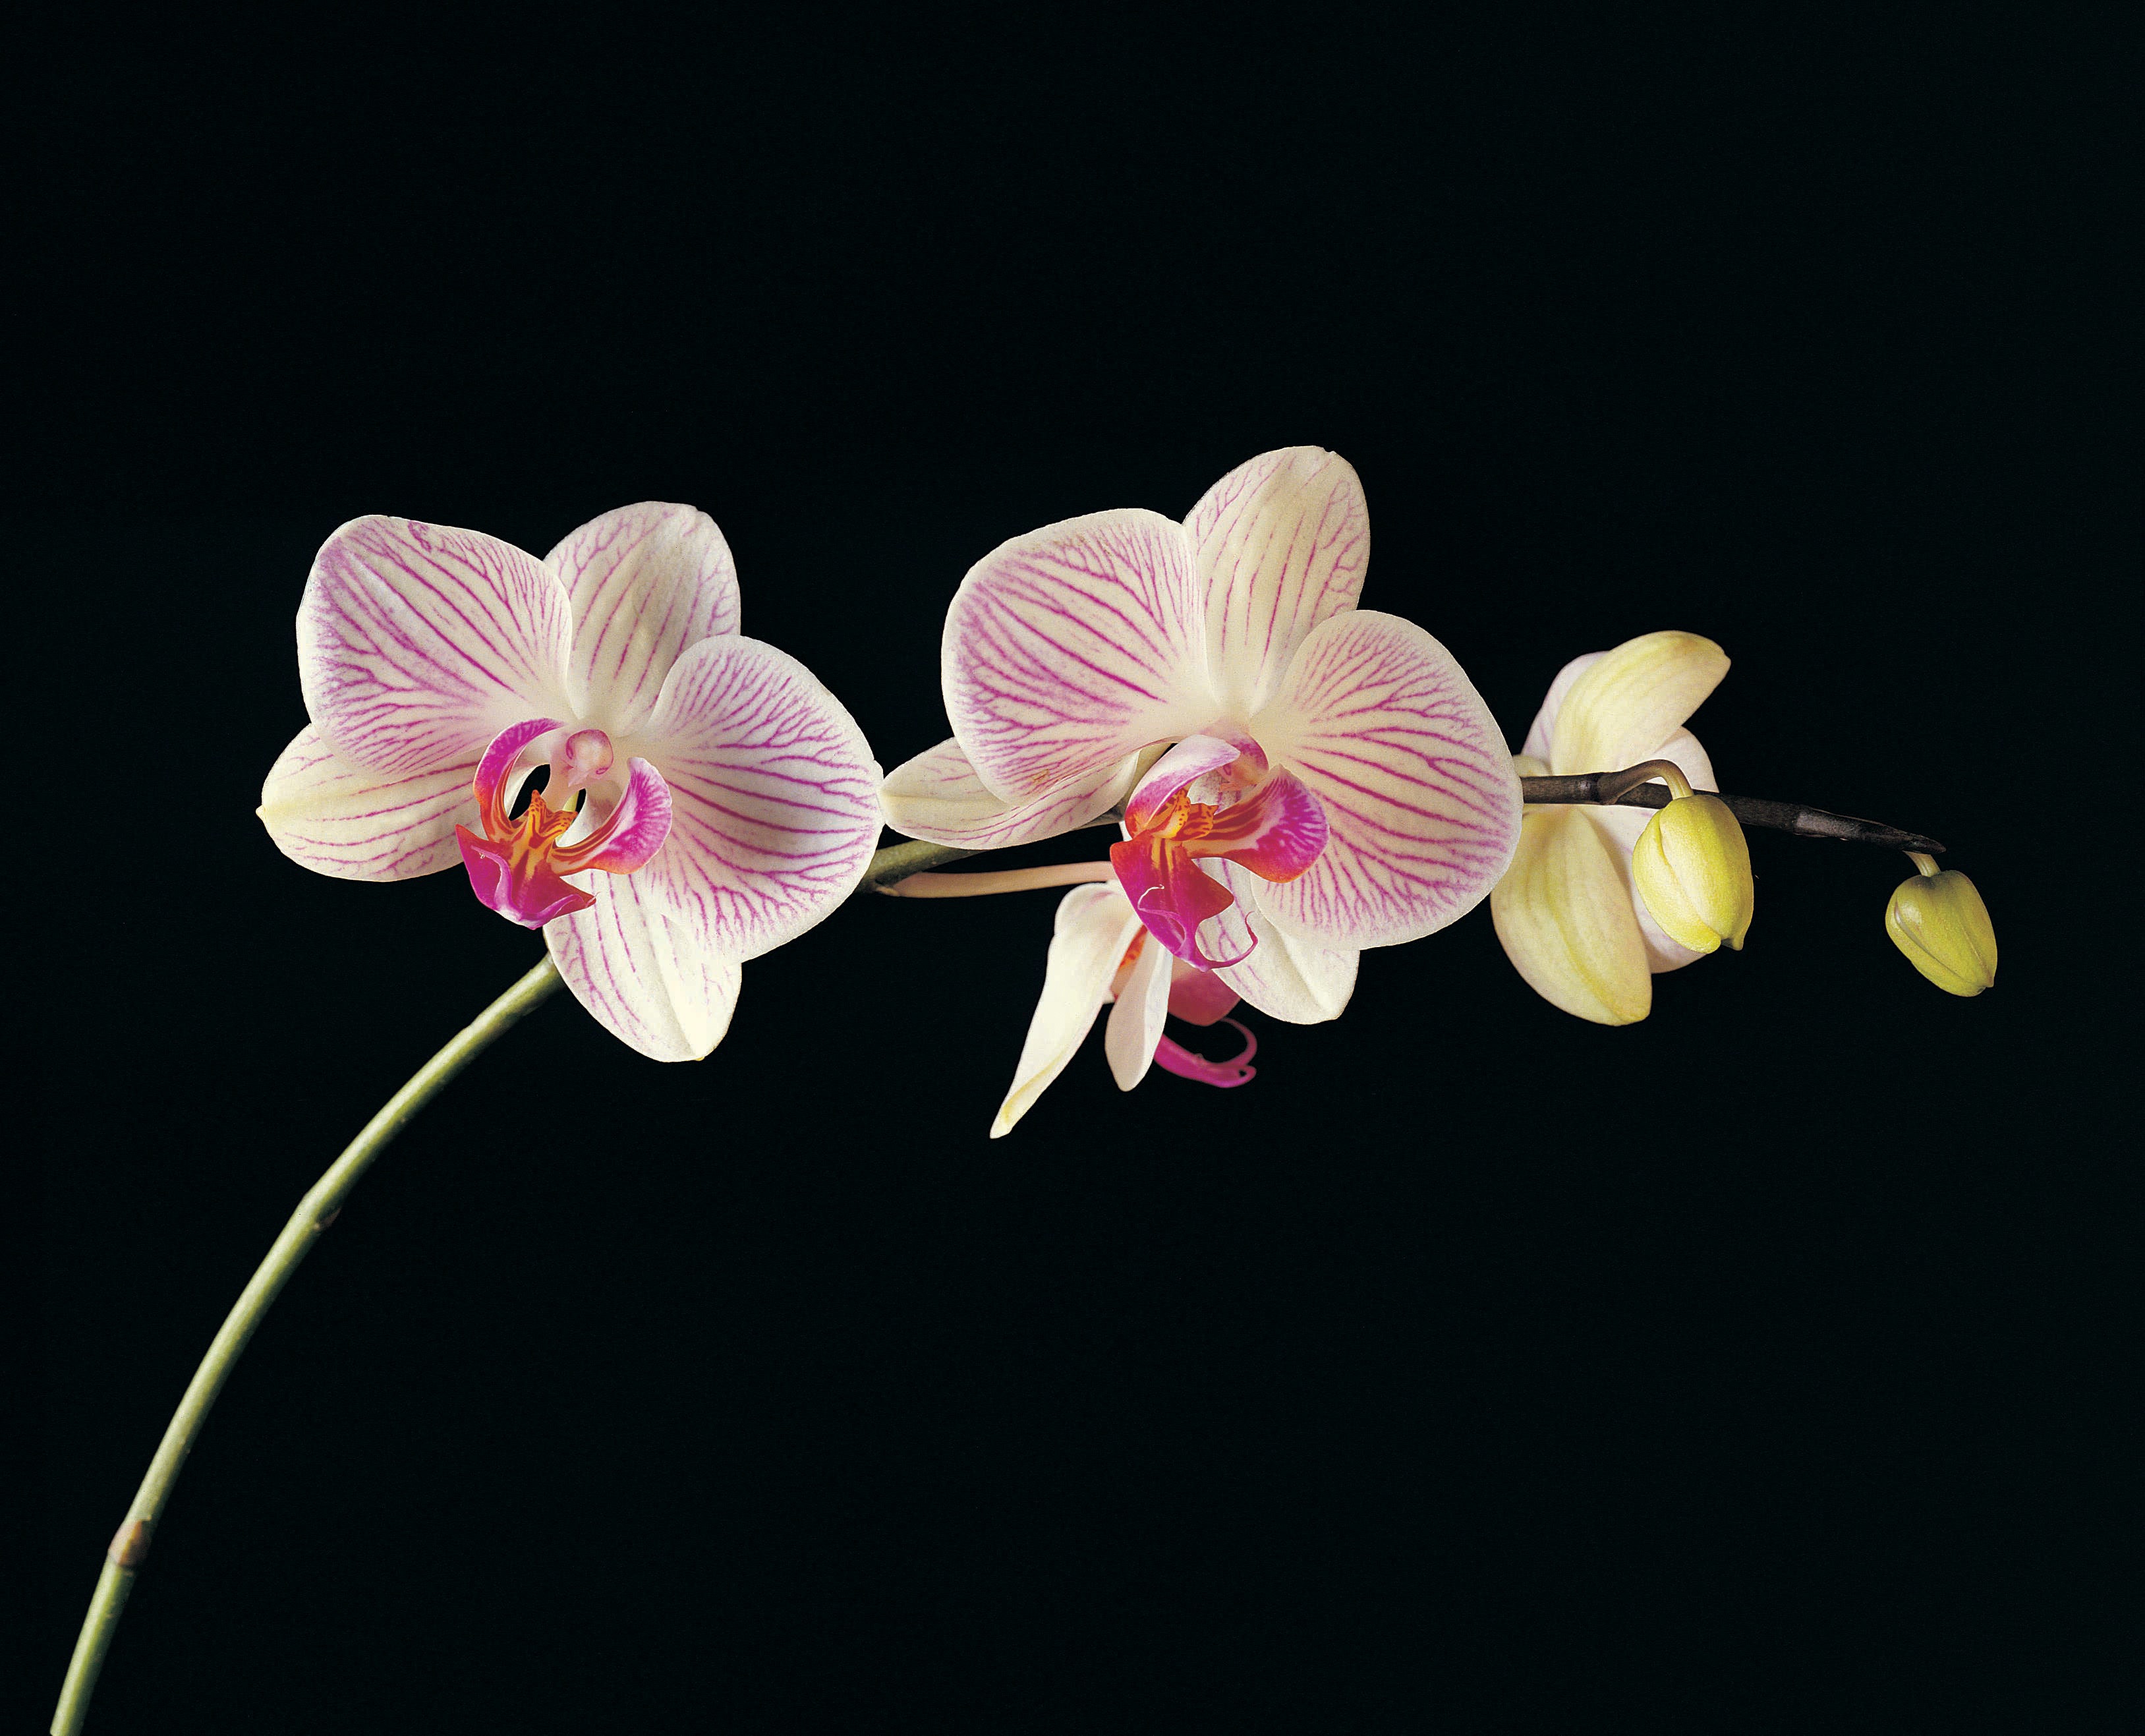 Водолей<br />
<br />
Ловки и изключително непредсказуеми за представителите на зодия Водолей е прекрасната орхидея. Водолеите са иновативни и мразят да се съобразяват с определени стереотипи, а орхидеите отлично символизират тяхната дива и странна природа. Водолеите и орхидеите са едновременно уникални и идват в безброй форми и цветове.<br />
<br />
Други цветя, подходящи за Водолей: стрелиции, златник, гладиола